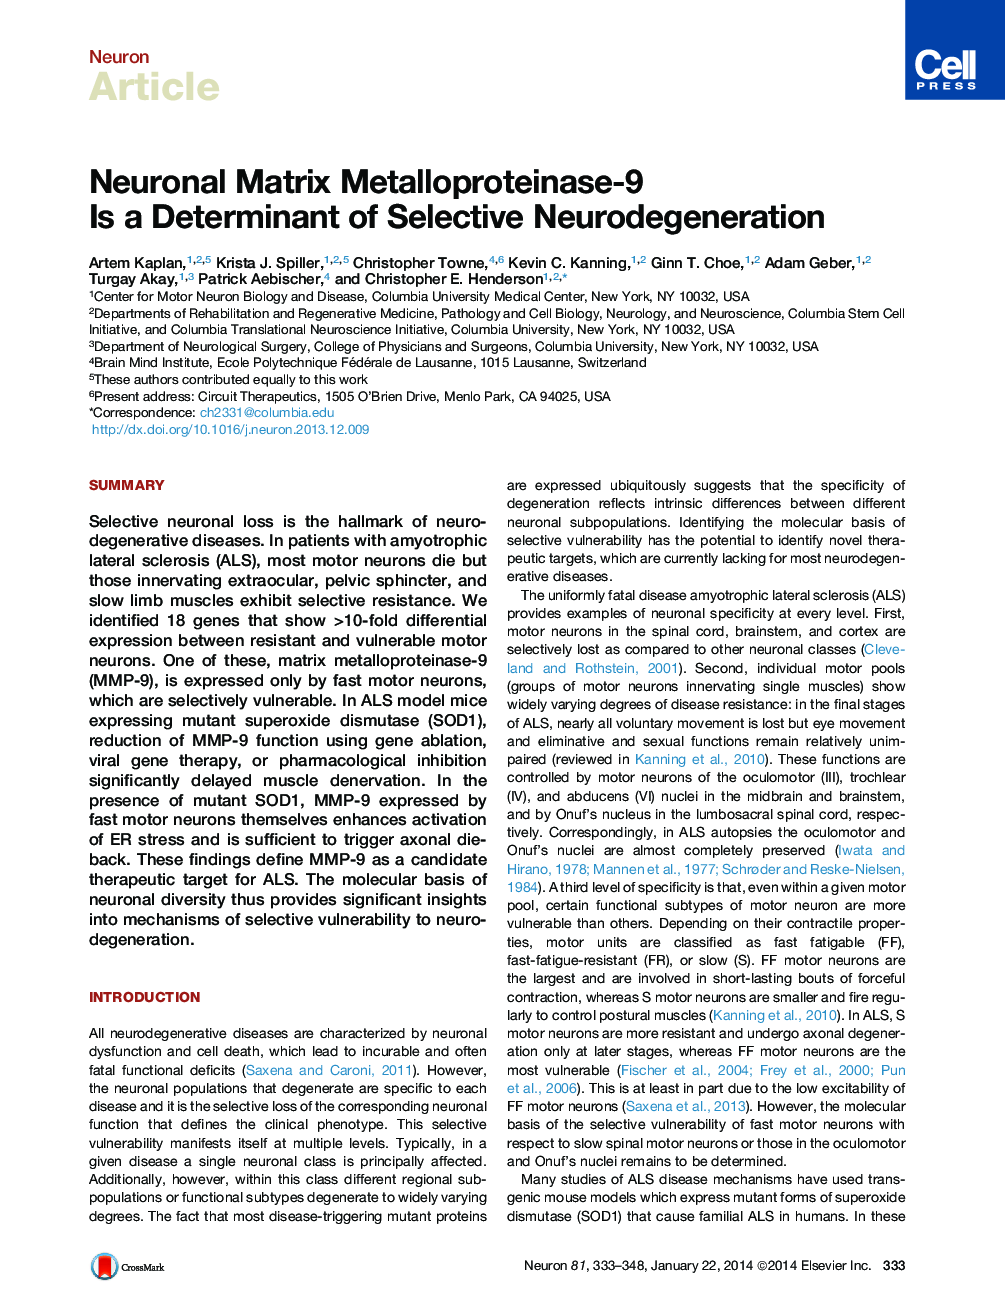 ماتریکس نورونال متالوپروتئیناز-9 یک تعیین کننده ژن نئودورالی انتخابی است 